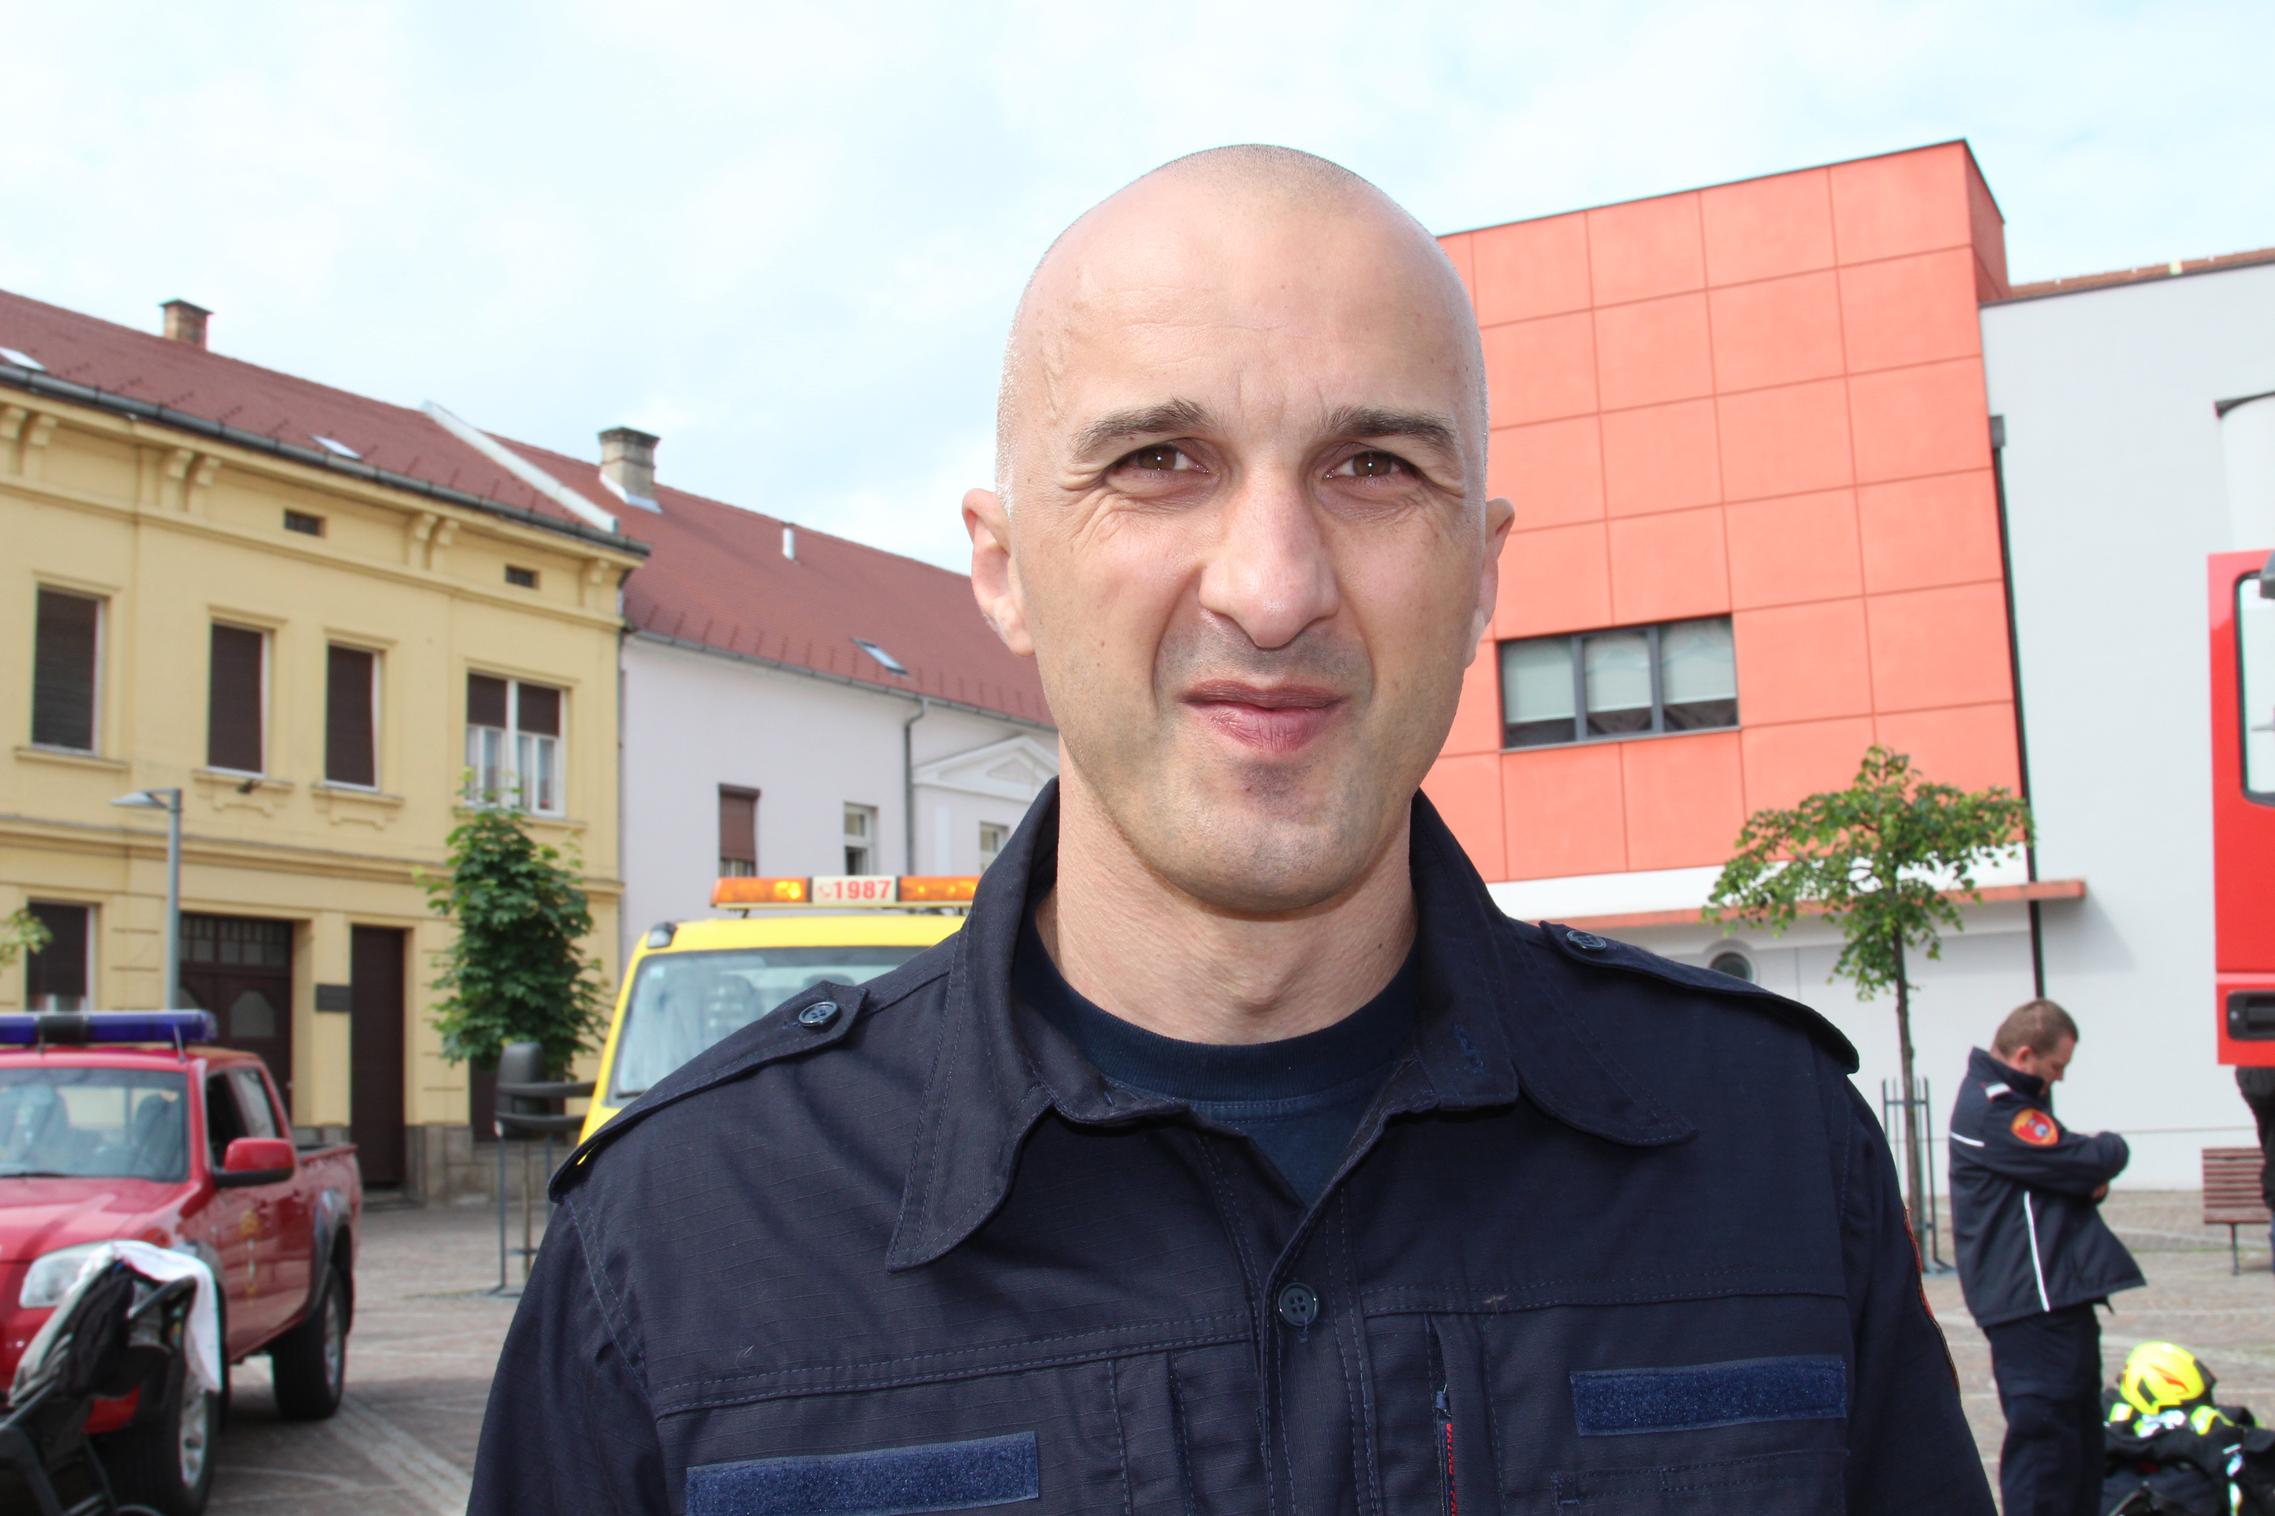 Dalibor Hrunka, zapovjednik JVP Grada Požege